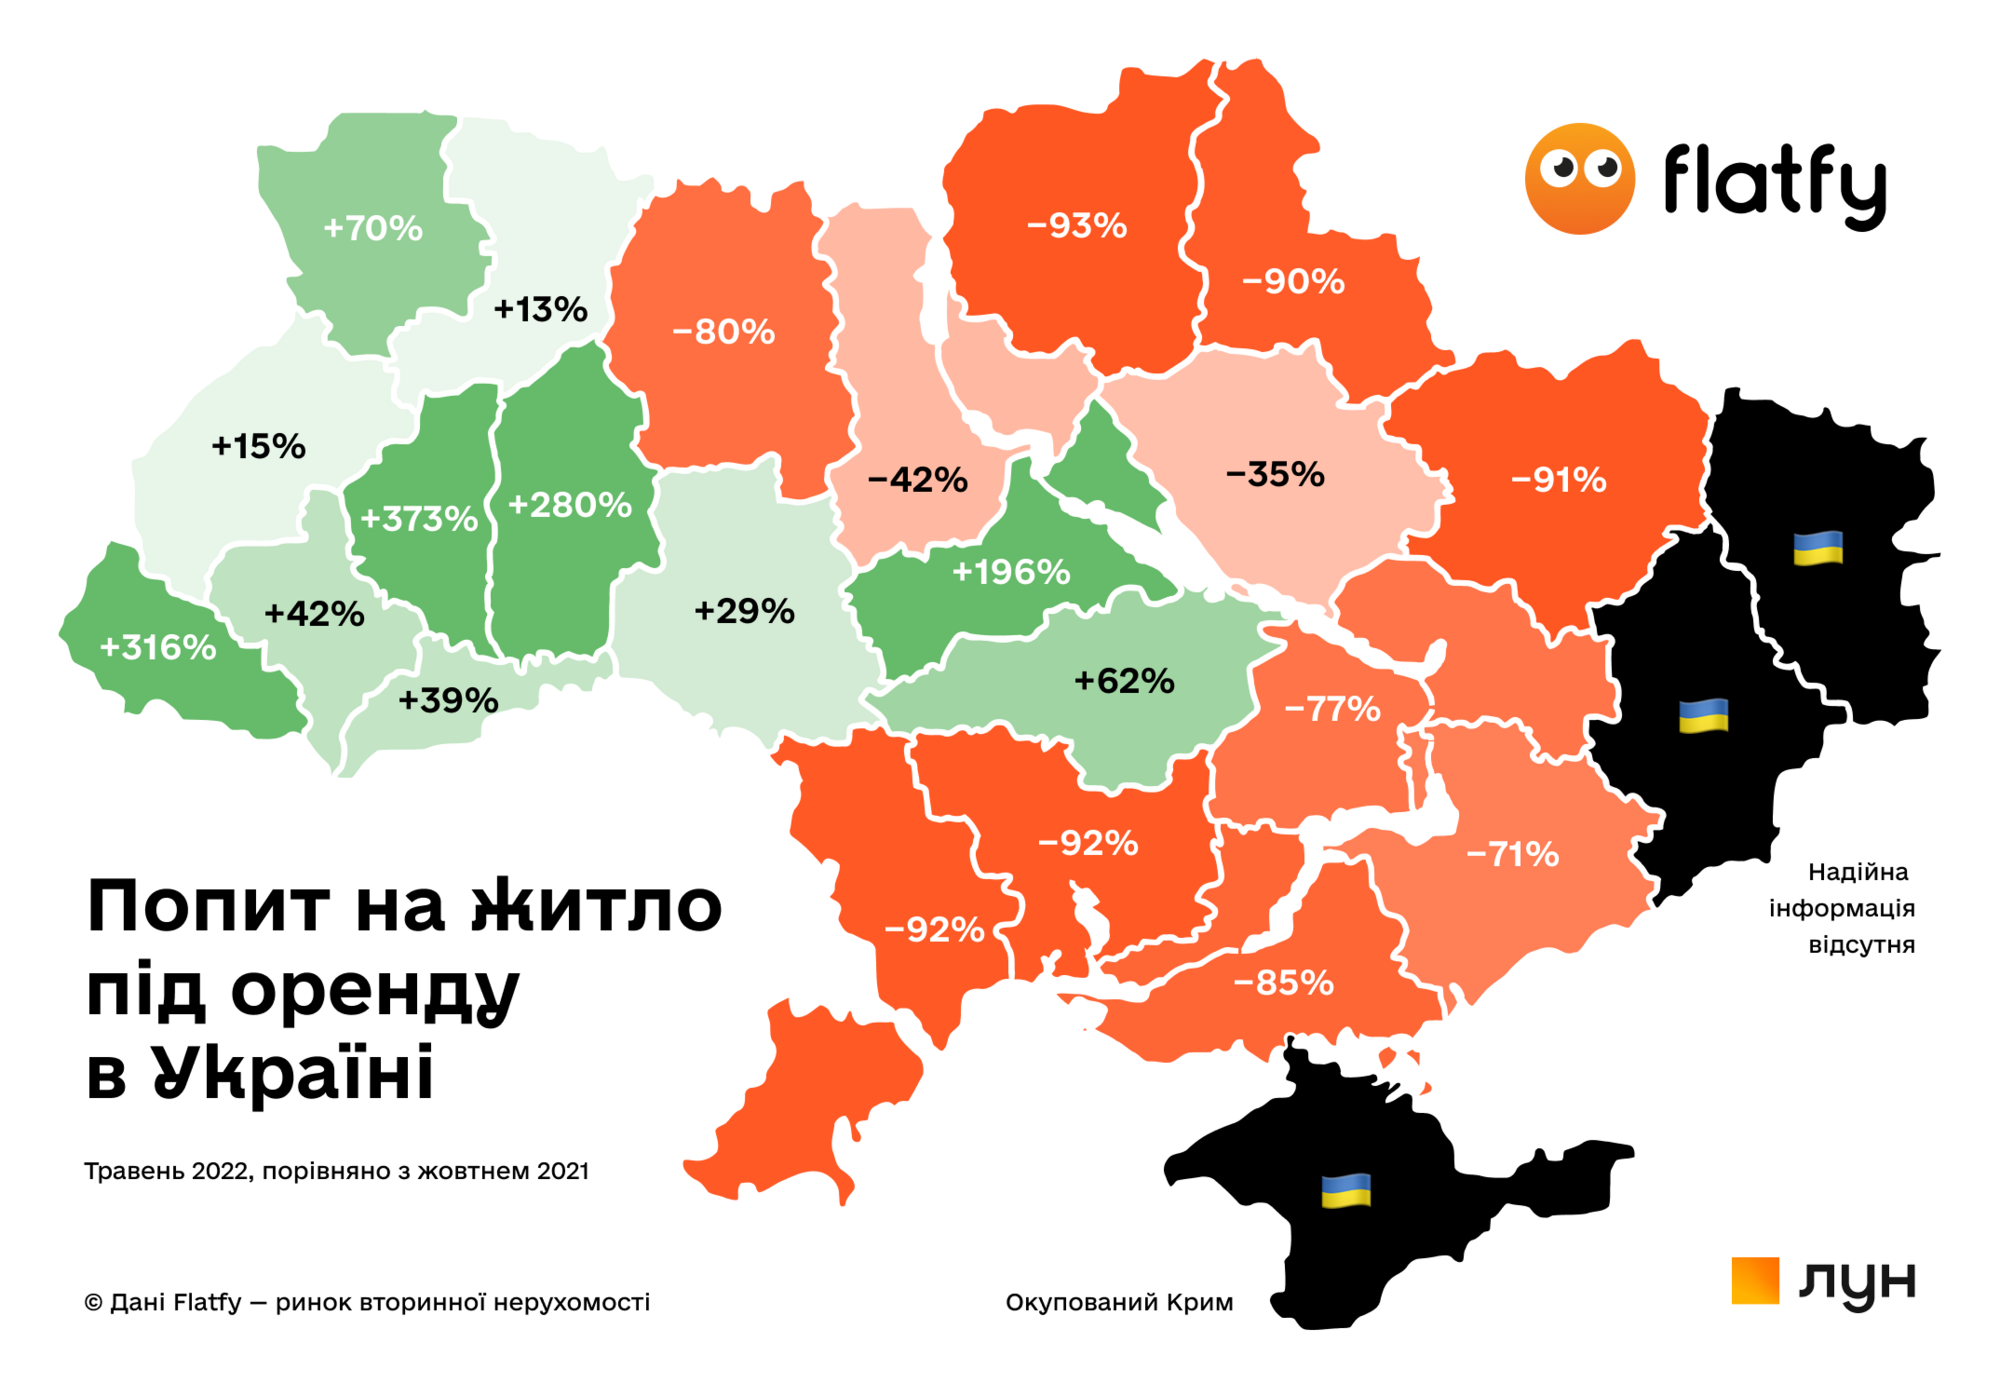 Как изменился спрос на аренду жилья в Украине